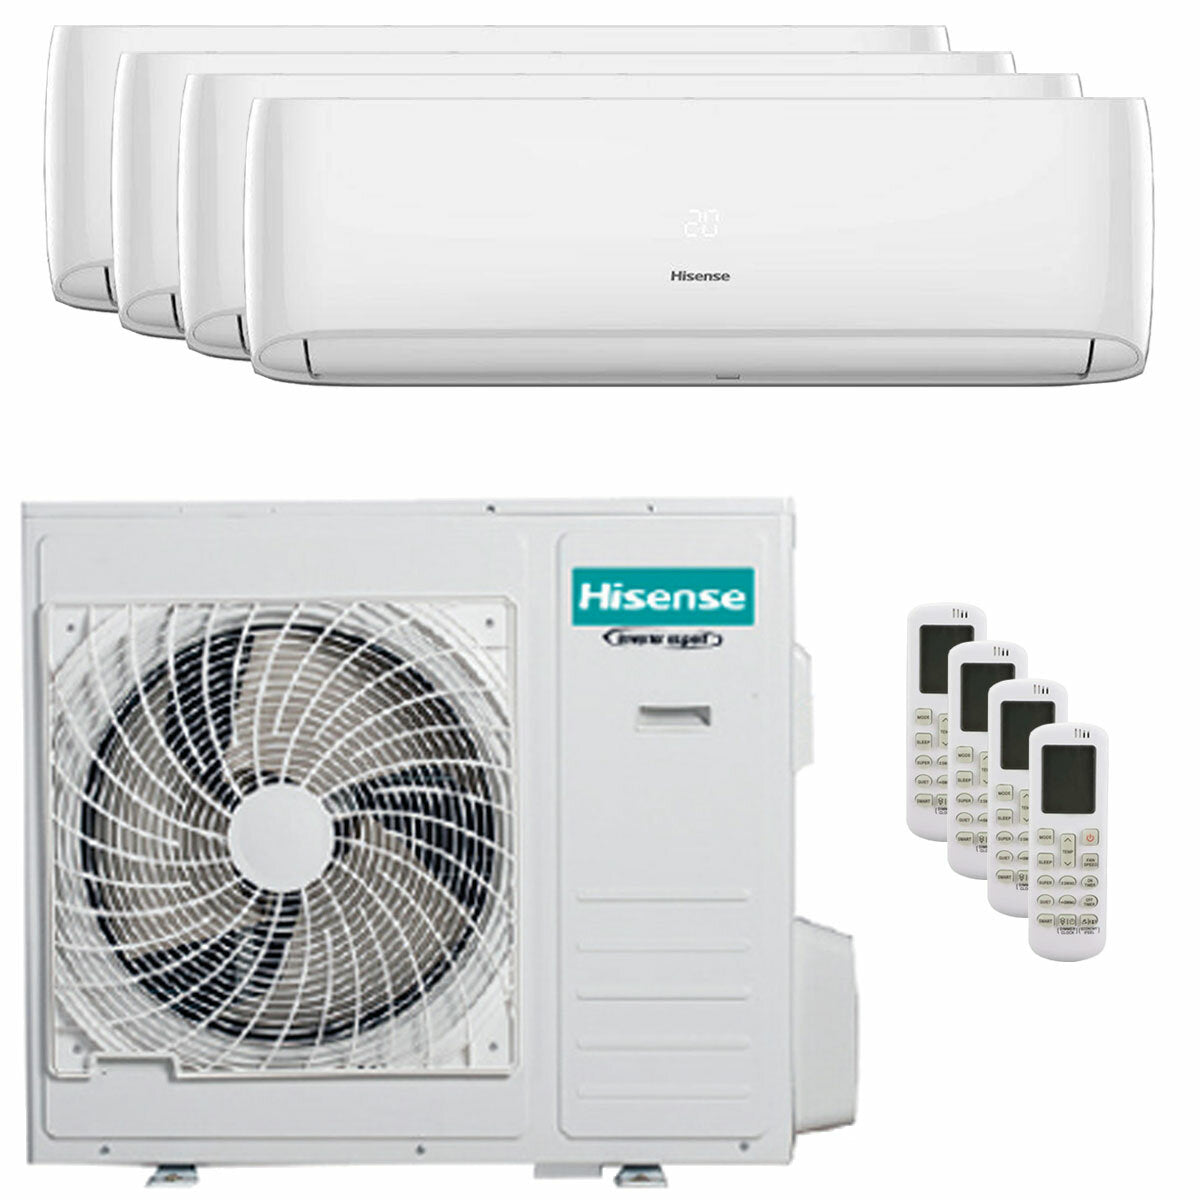 Hisense Hi-Comfort quadri split air conditioner 7000 + 12000 + 12000 + 12000 BTU inverter A++ wifi outdoor unit 10.0 kW